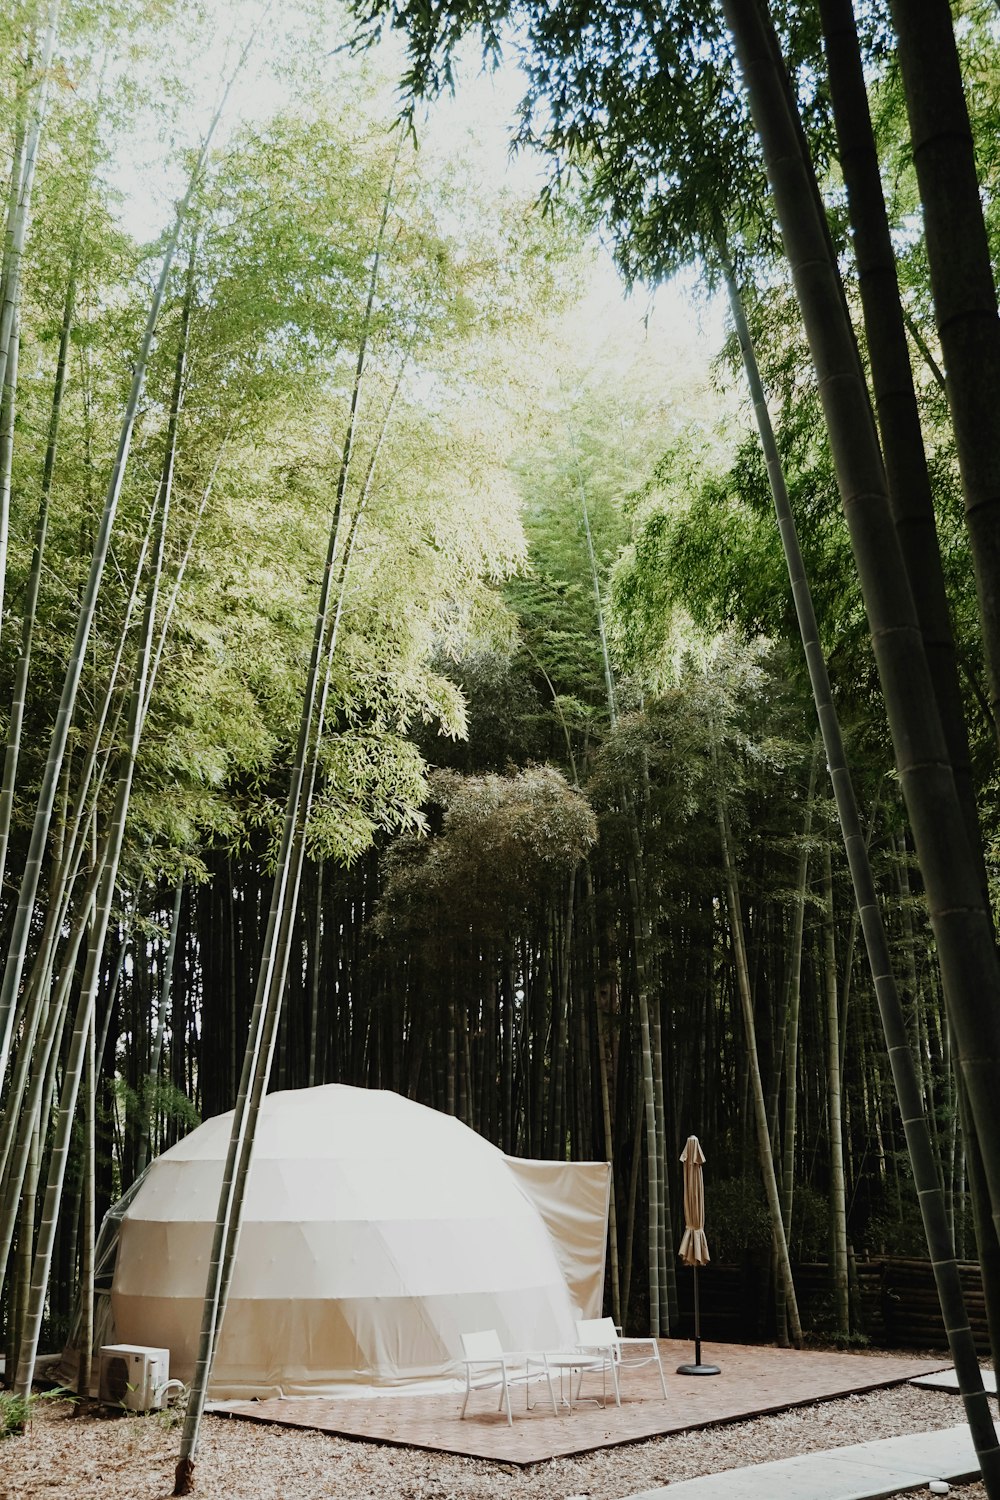 대나무 숲 한가운데에 있는 텐트